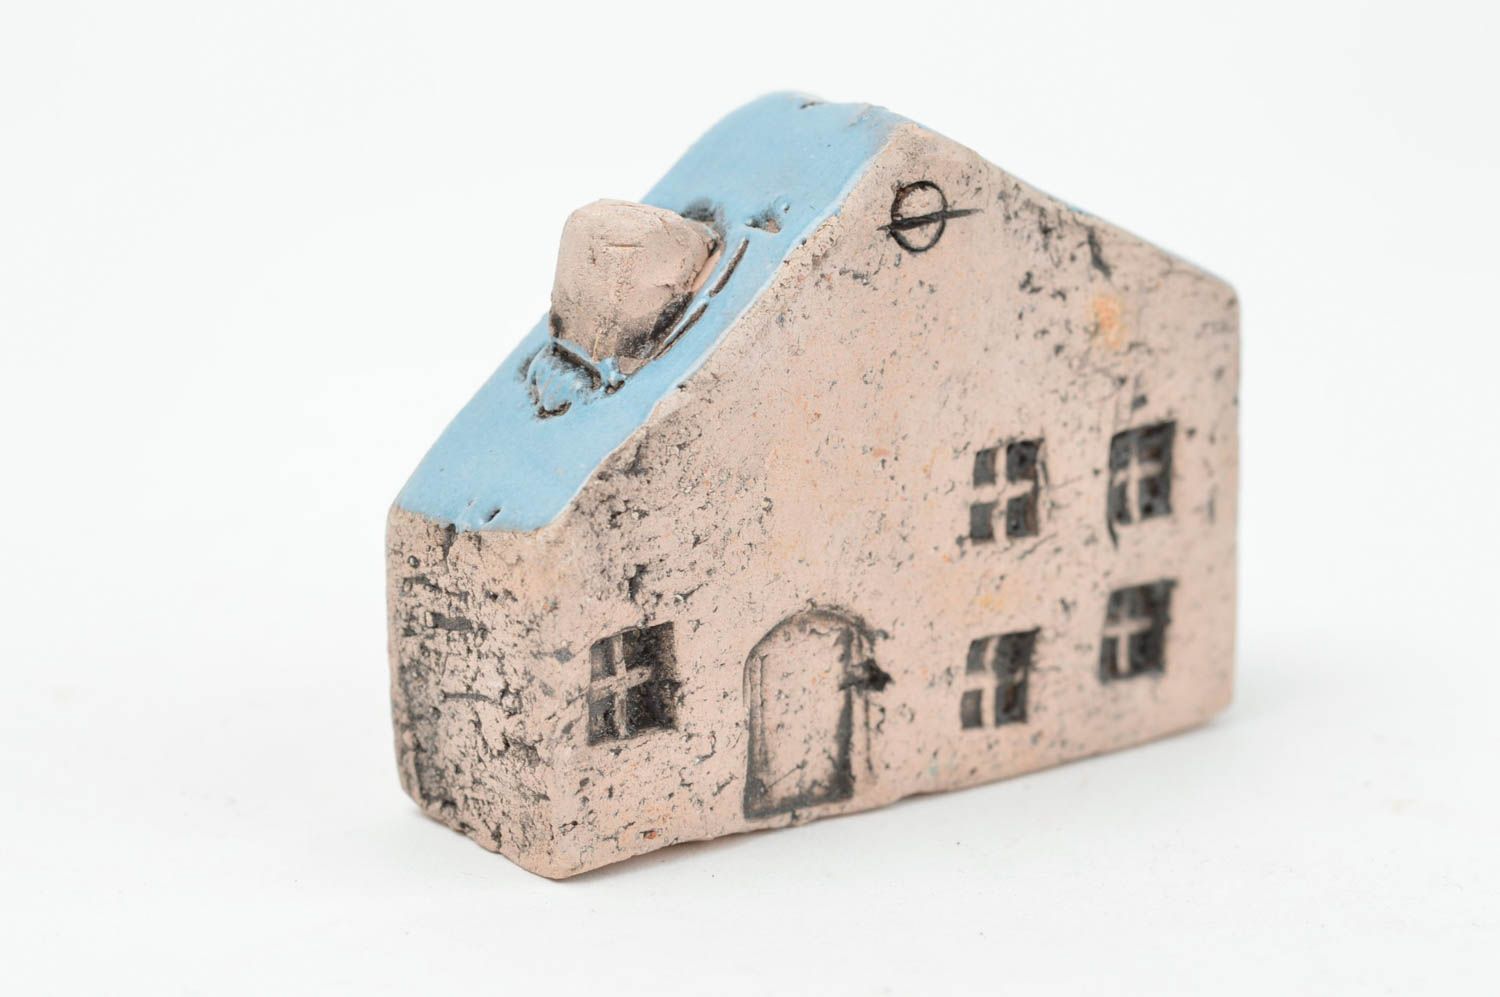 Оригинальная фигурка из глины в виде домика с голубой крышей ручной работы фото 3